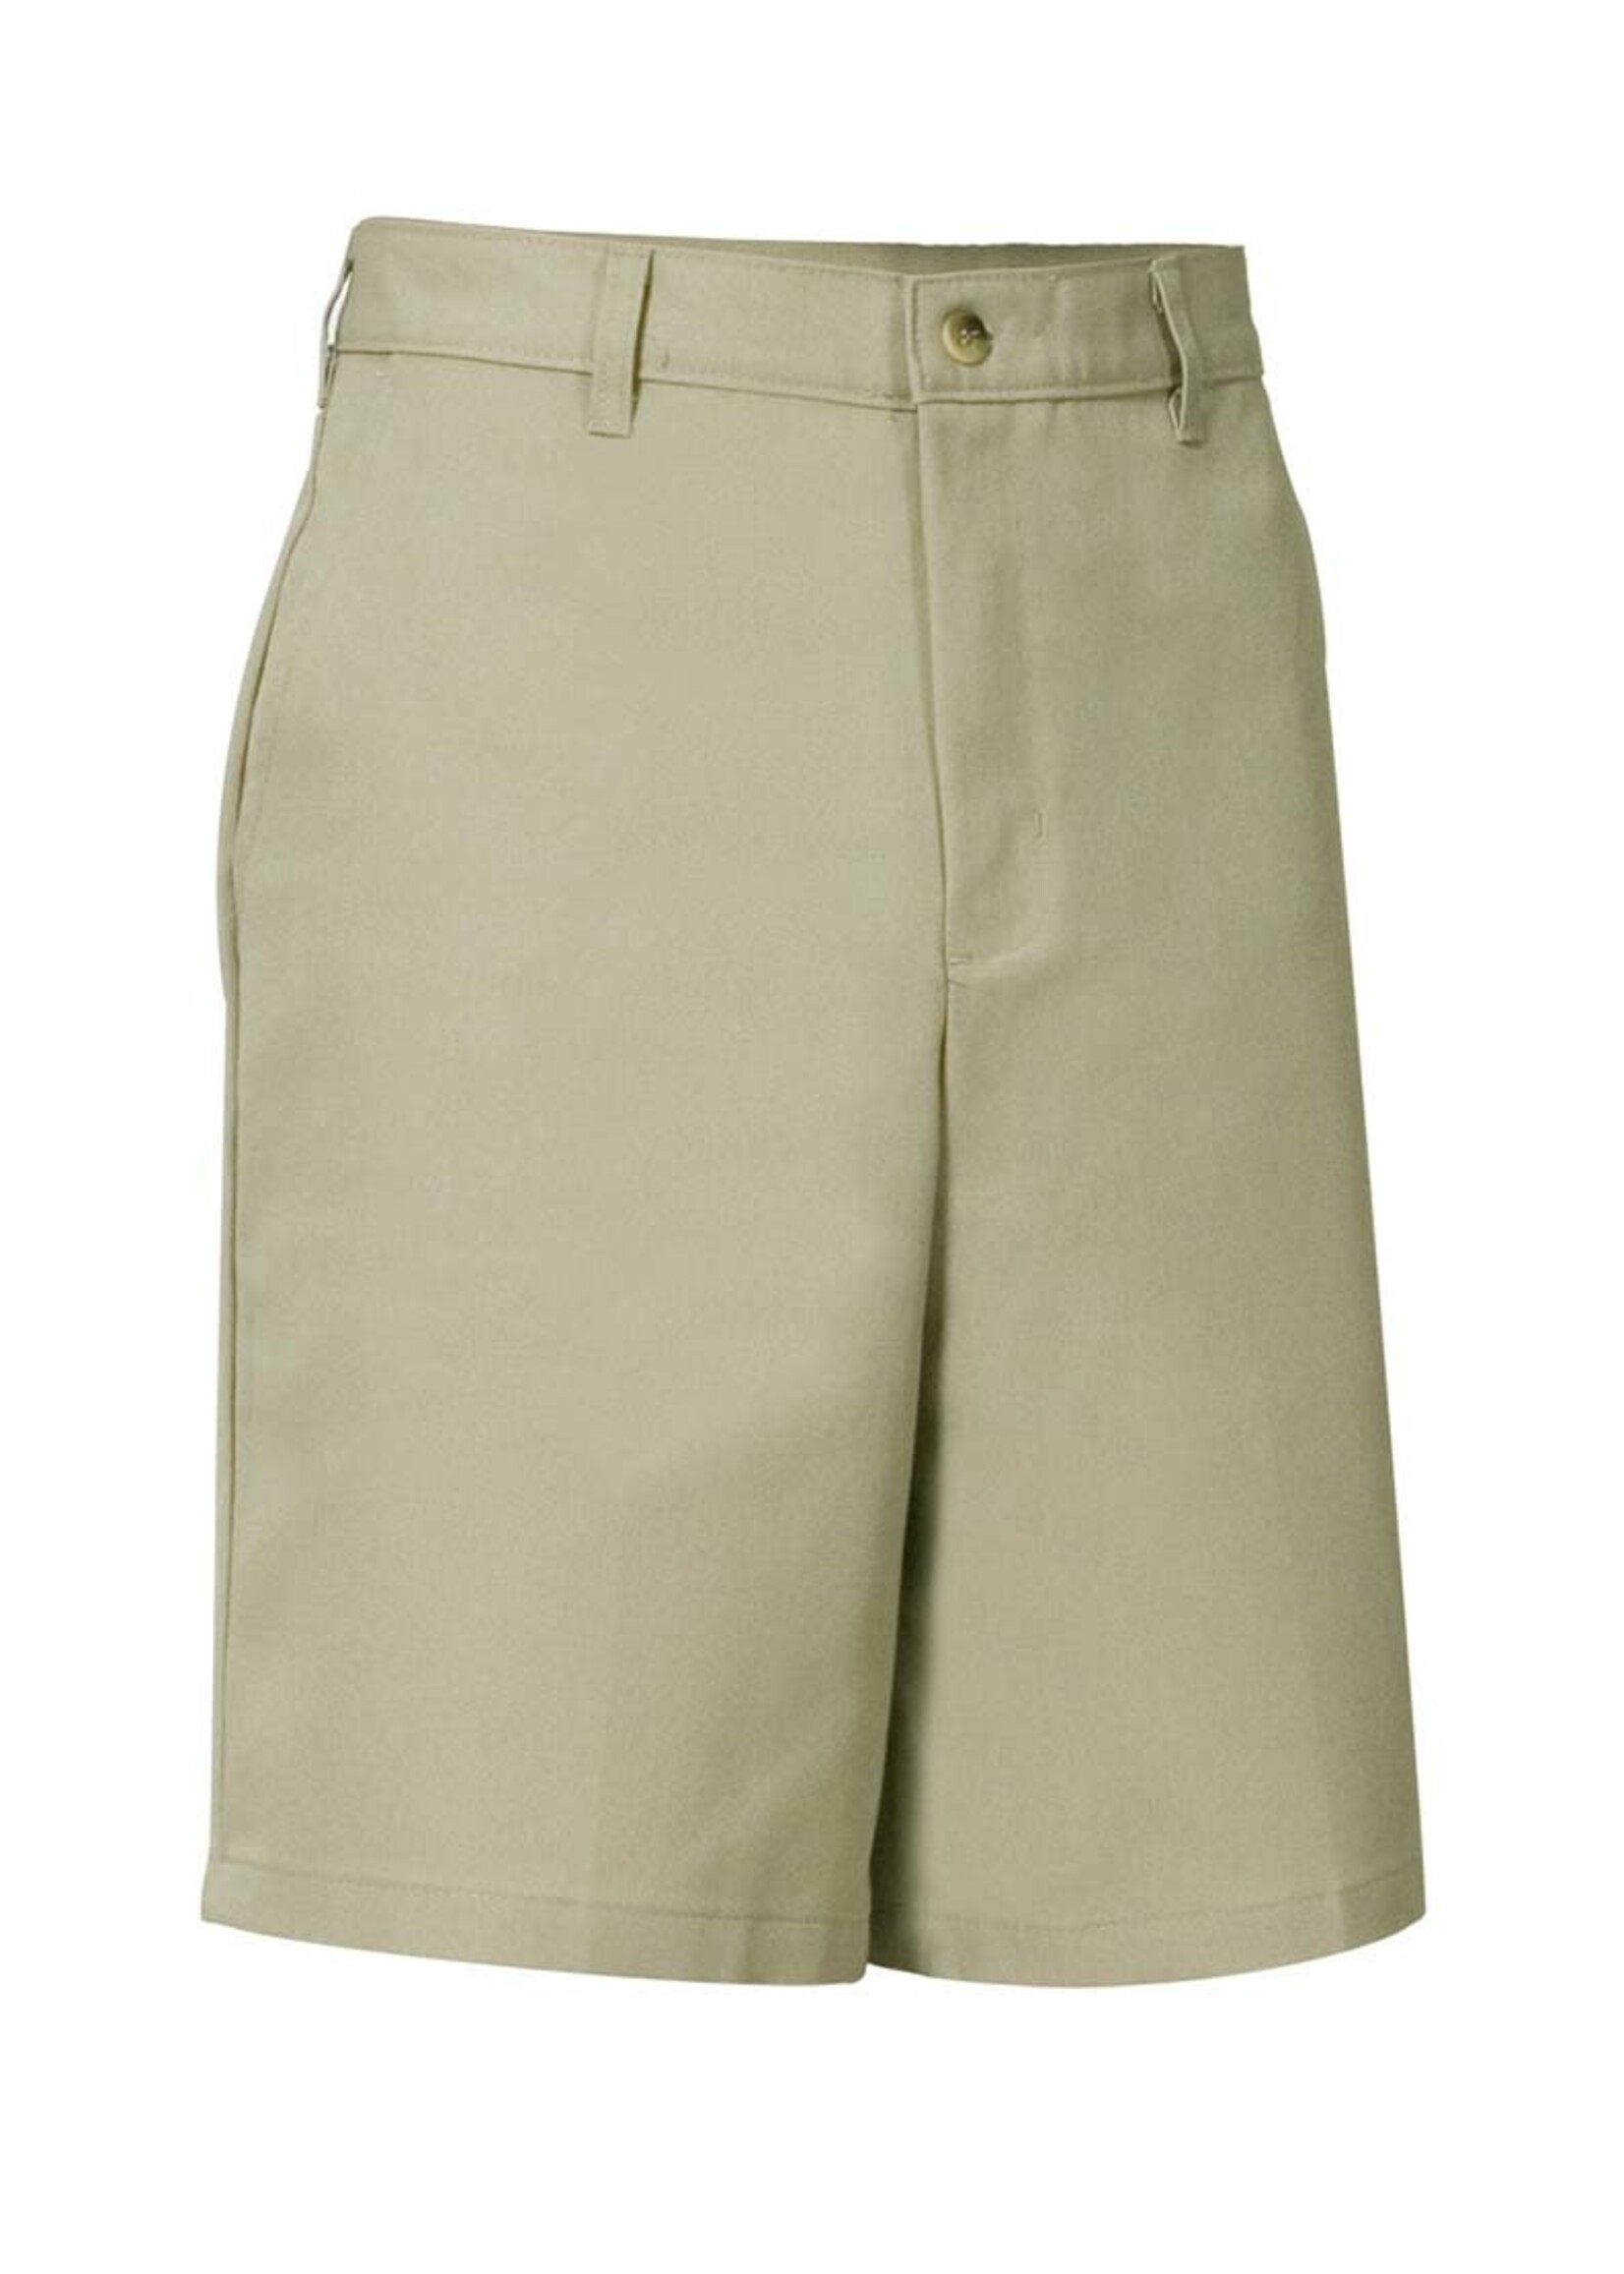 Mens Flat Front Shorts (KN)